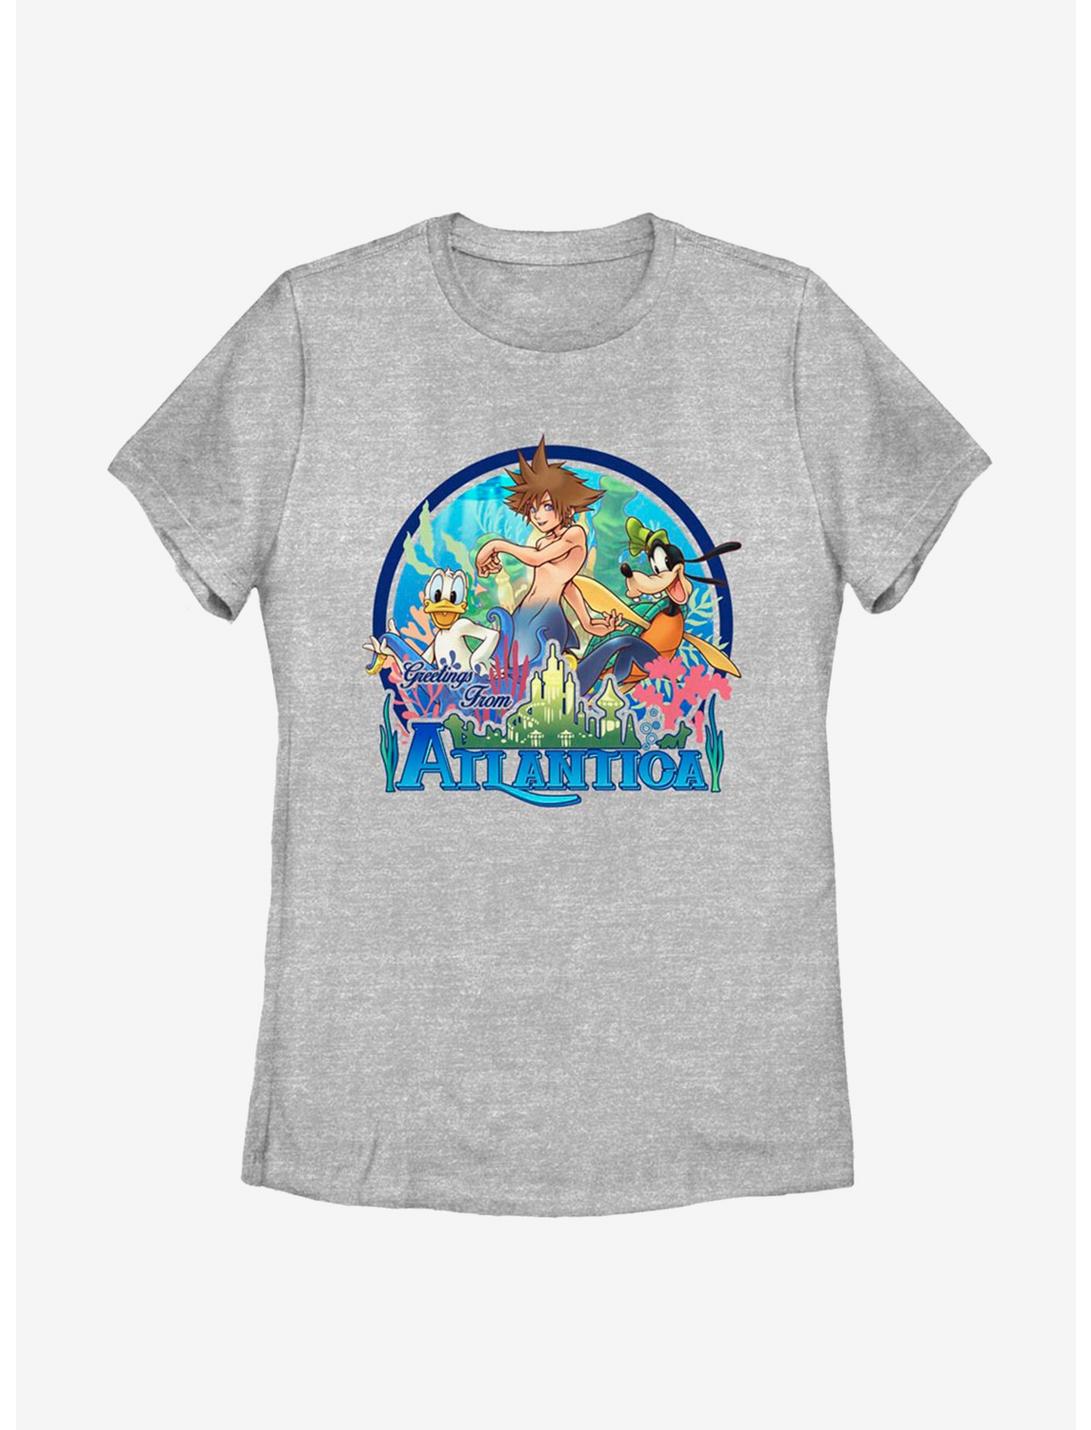 Disney Kingdom Hearts Atlantica World Womens T-Shirt, ATH HTR, hi-res